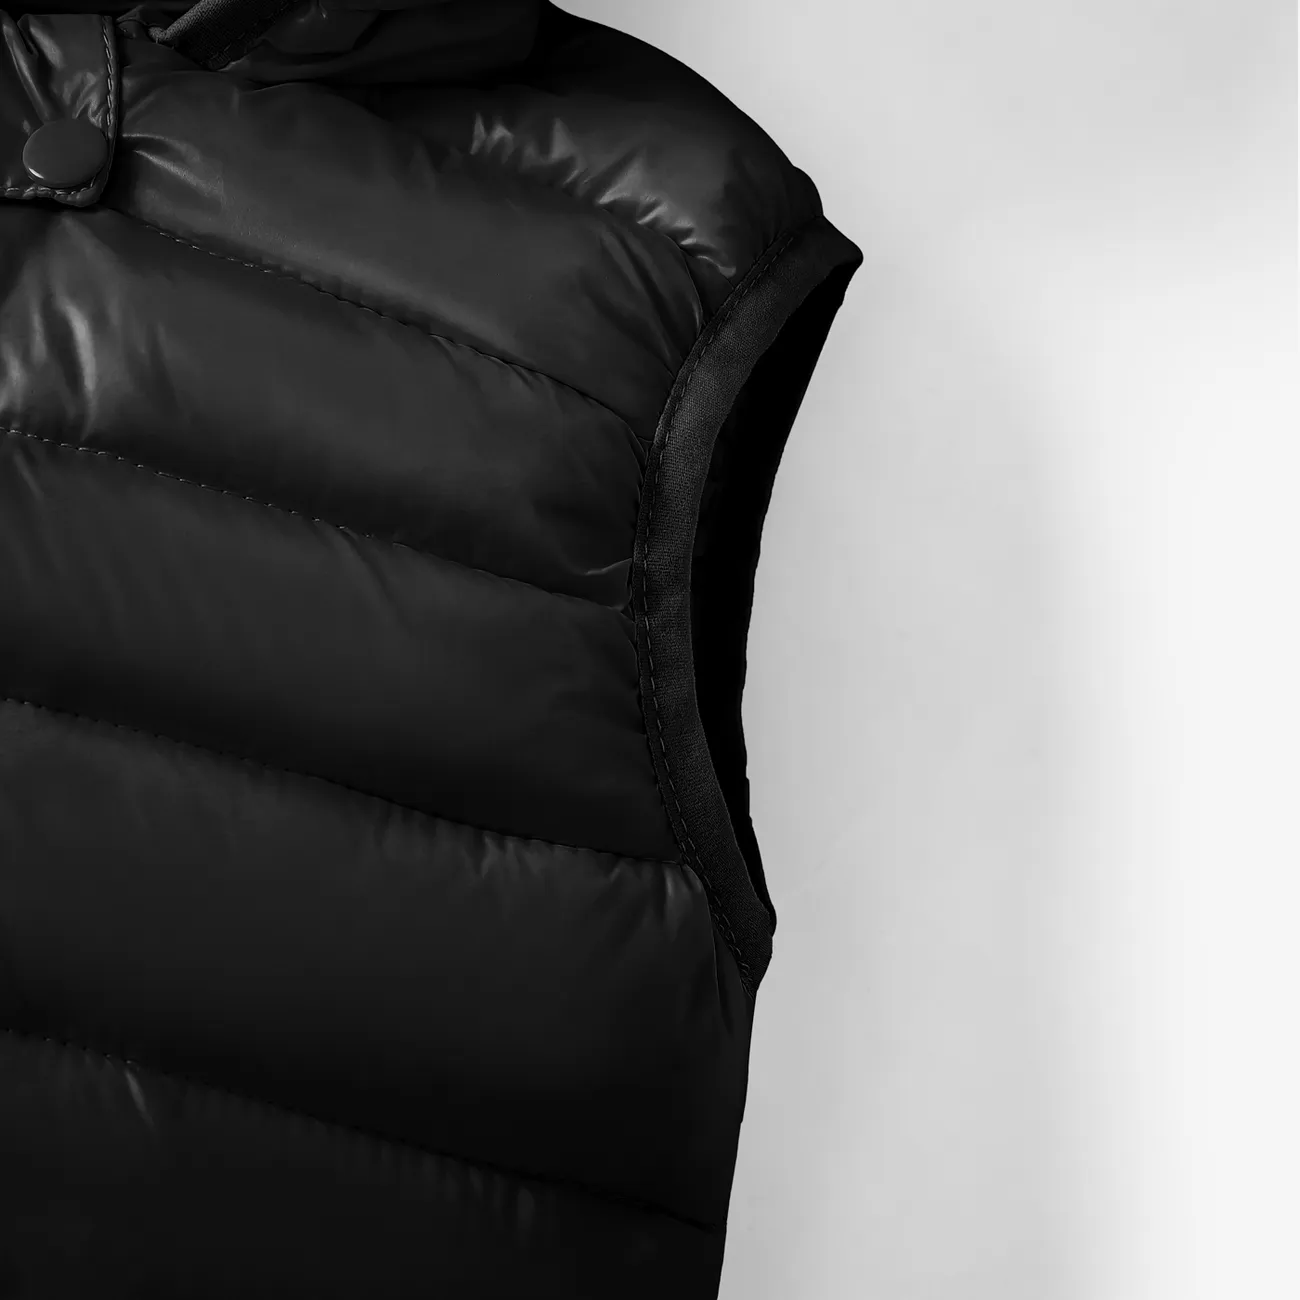 Manteau de coton unisexe 3D hyper-tactile pour tout-petits Noir big image 1